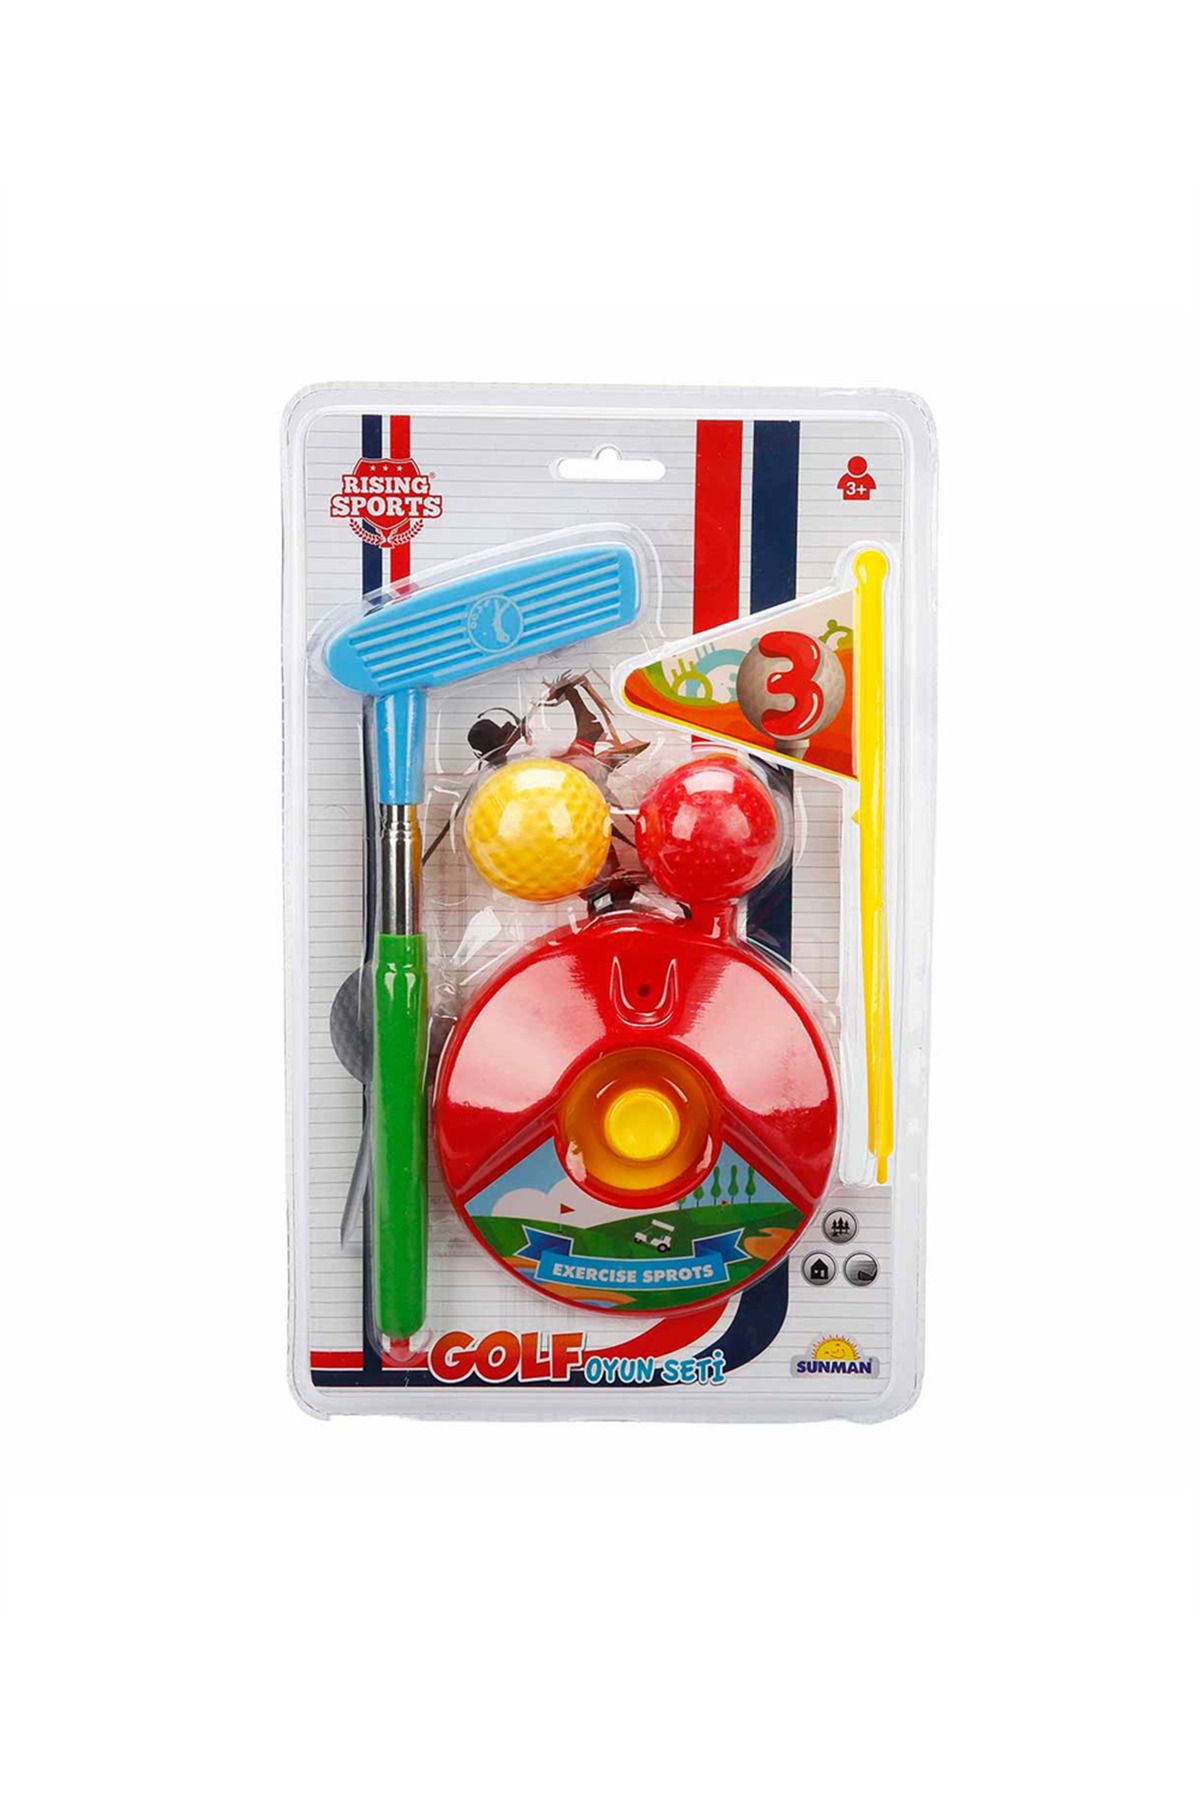 Sunman Mini Golf Oyun Seti - Sarı Top Çukuru